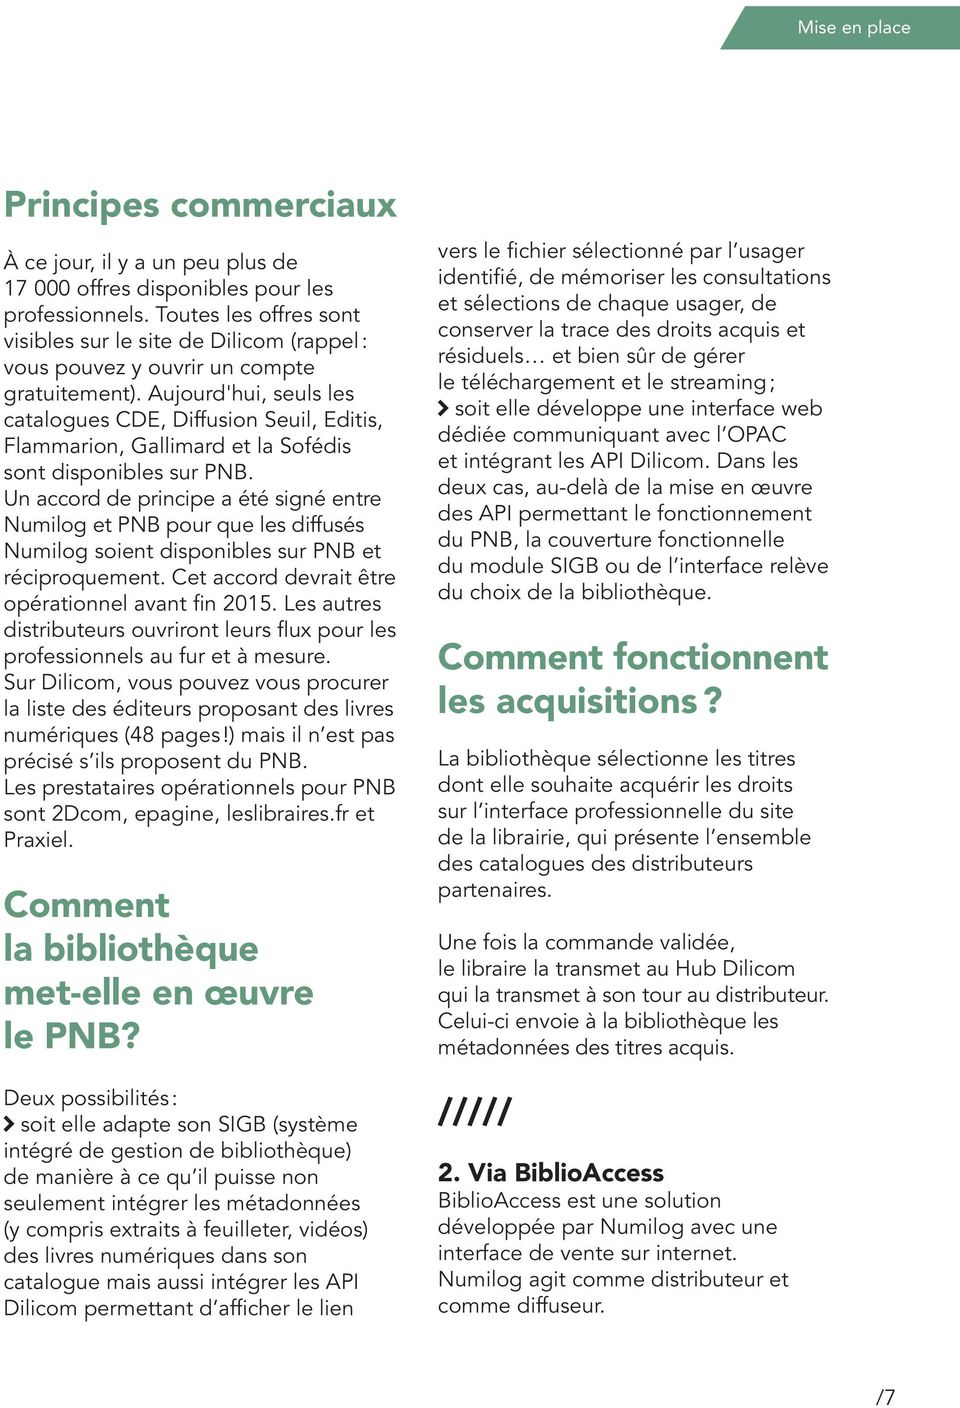 Aujourd'hui, seuls les catalogues CDE, Diffusion Seuil, Editis, Flammarion, Gallimard et la Sofédis sont disponibles sur PNB.